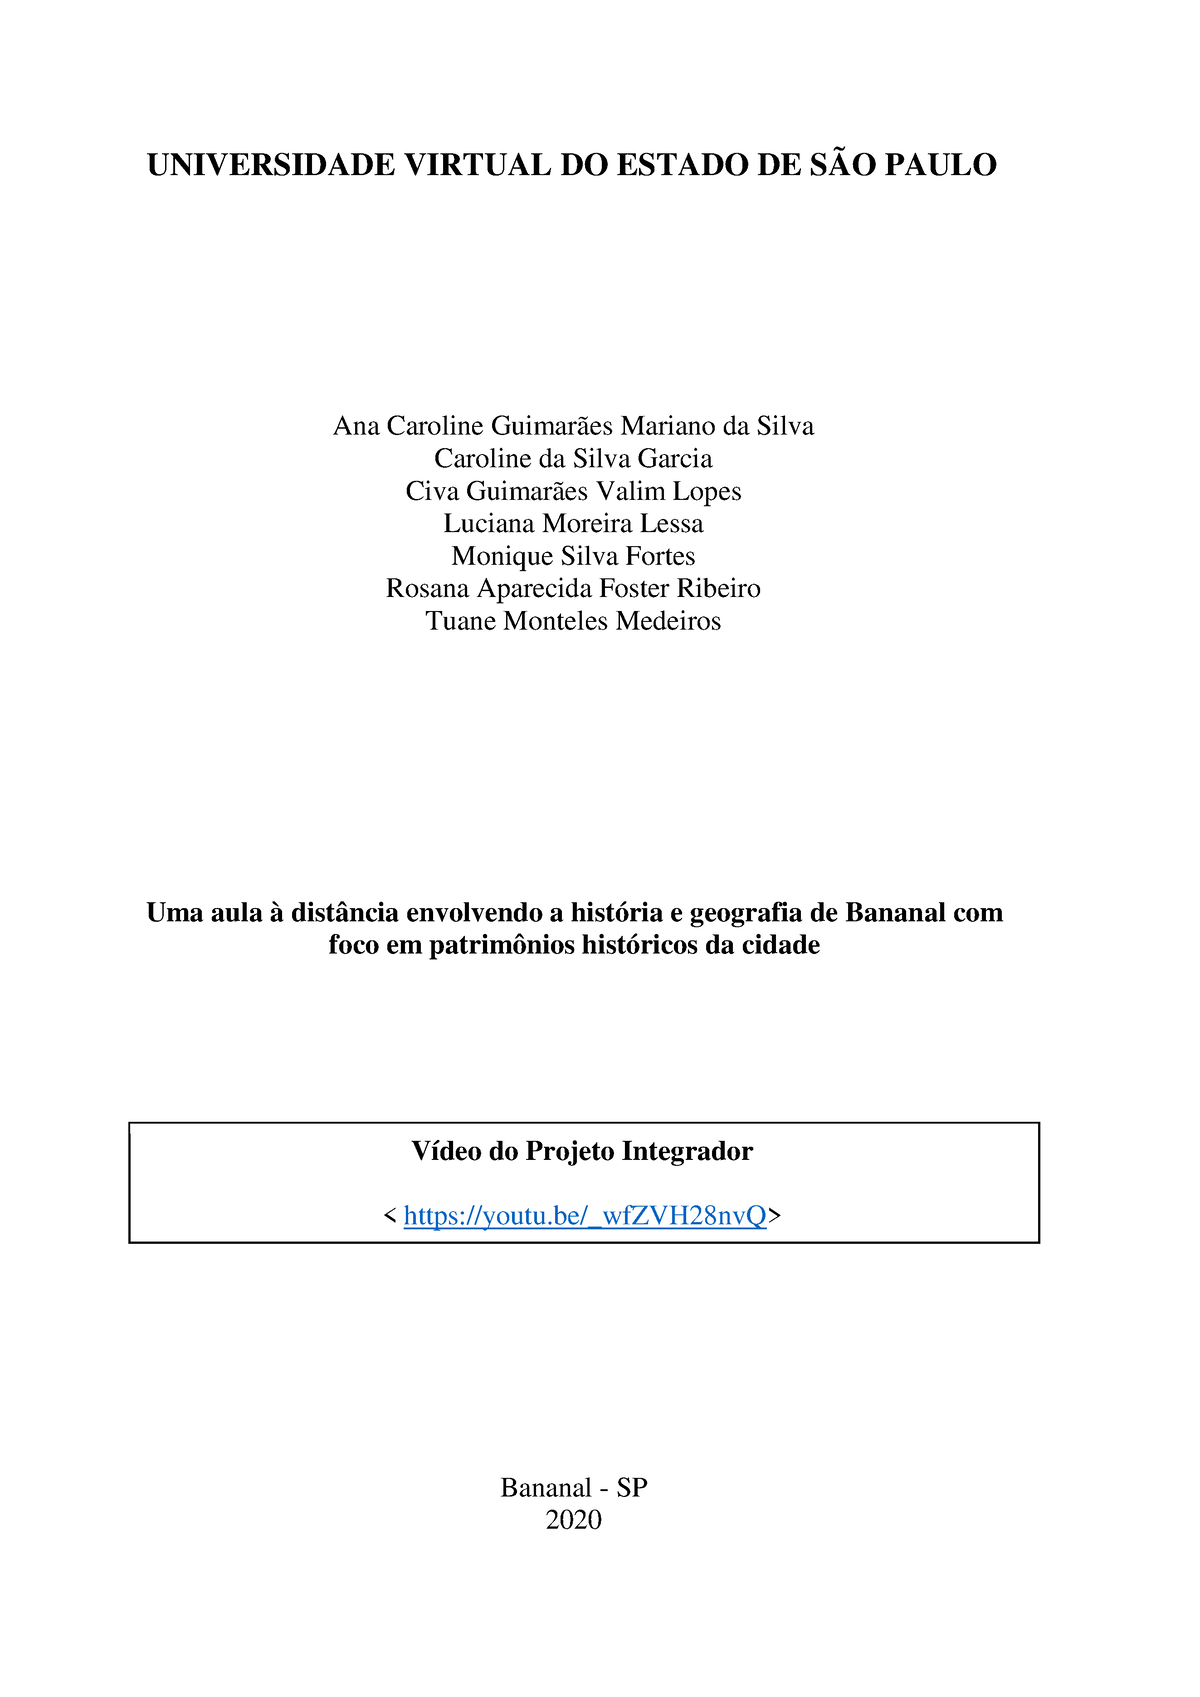 Relatório Final Pi Iv Universidade Virtual Do Estado De SÃo Paulo Ana